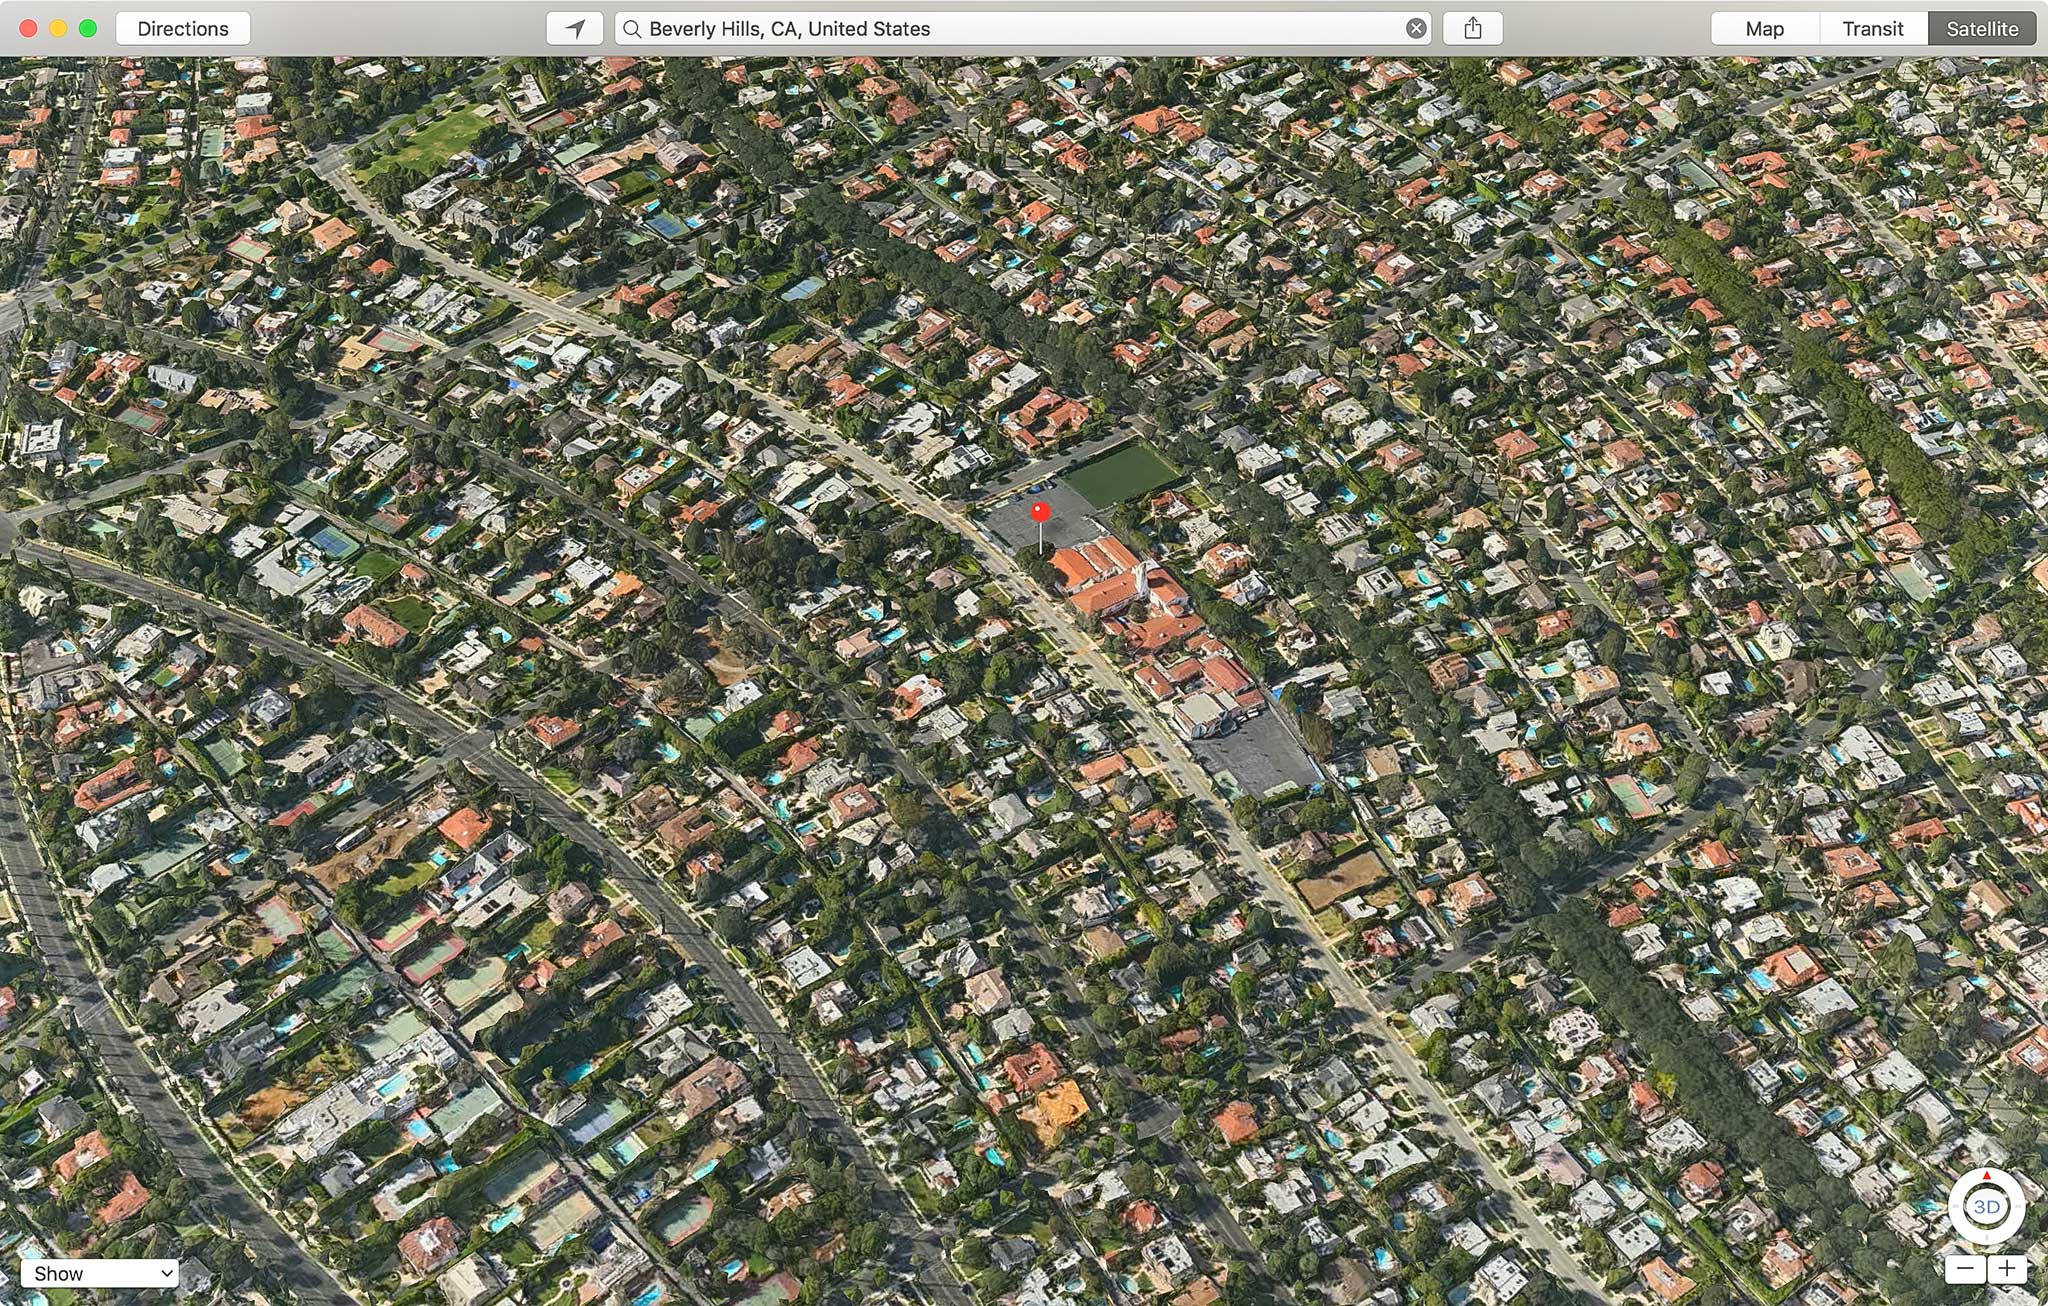 Mời anh em du lịch bằng Apple Maps, rất đẹp & chi tiết, có 3D, có ...